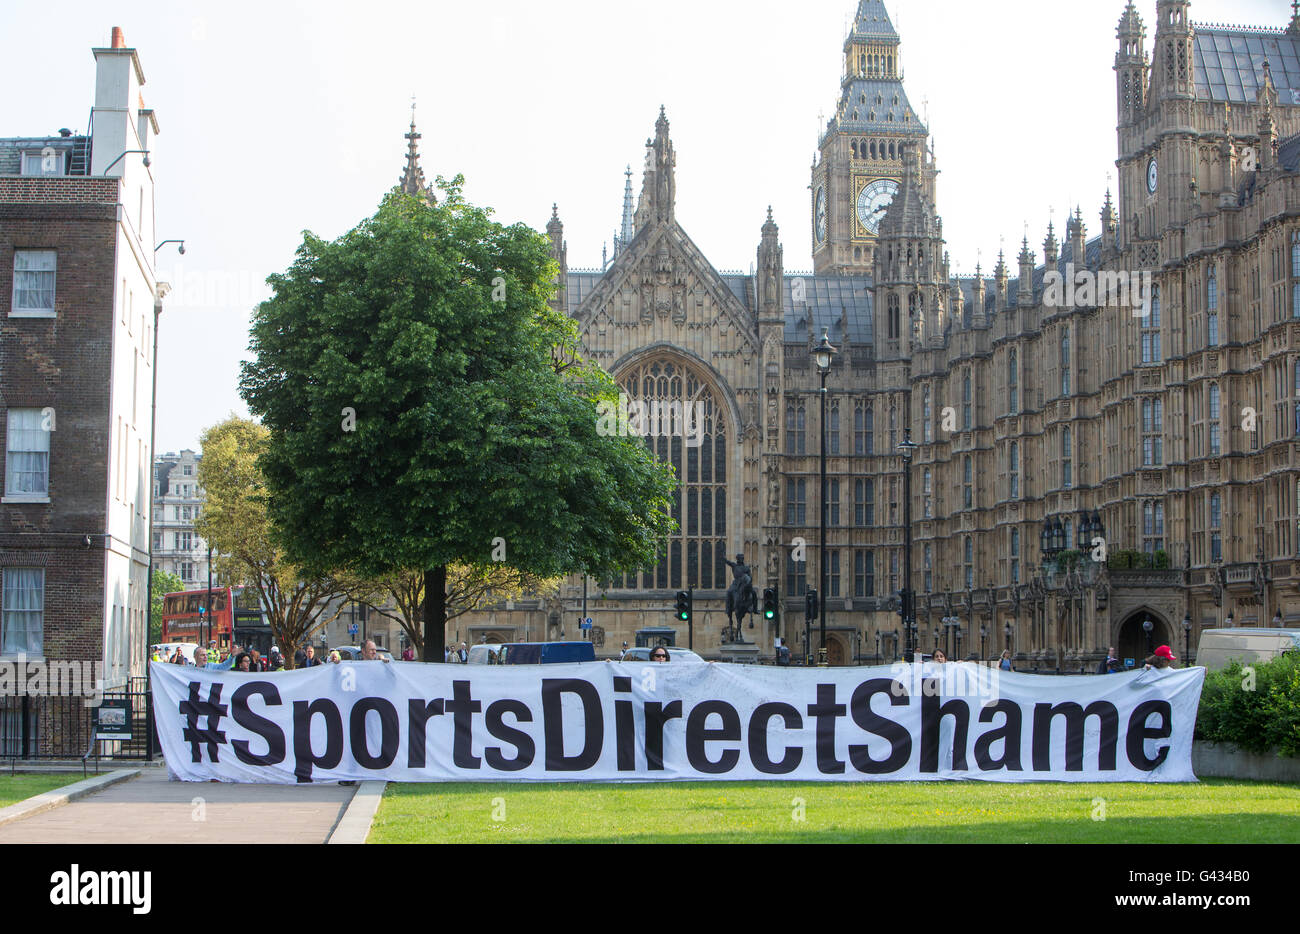 'Sports' honte Direct banner mettant en évidence les mauvaises conditions de travail chez Sports direct.Le propriétaire Mike Ashley apparaît au Parlement européen Banque D'Images